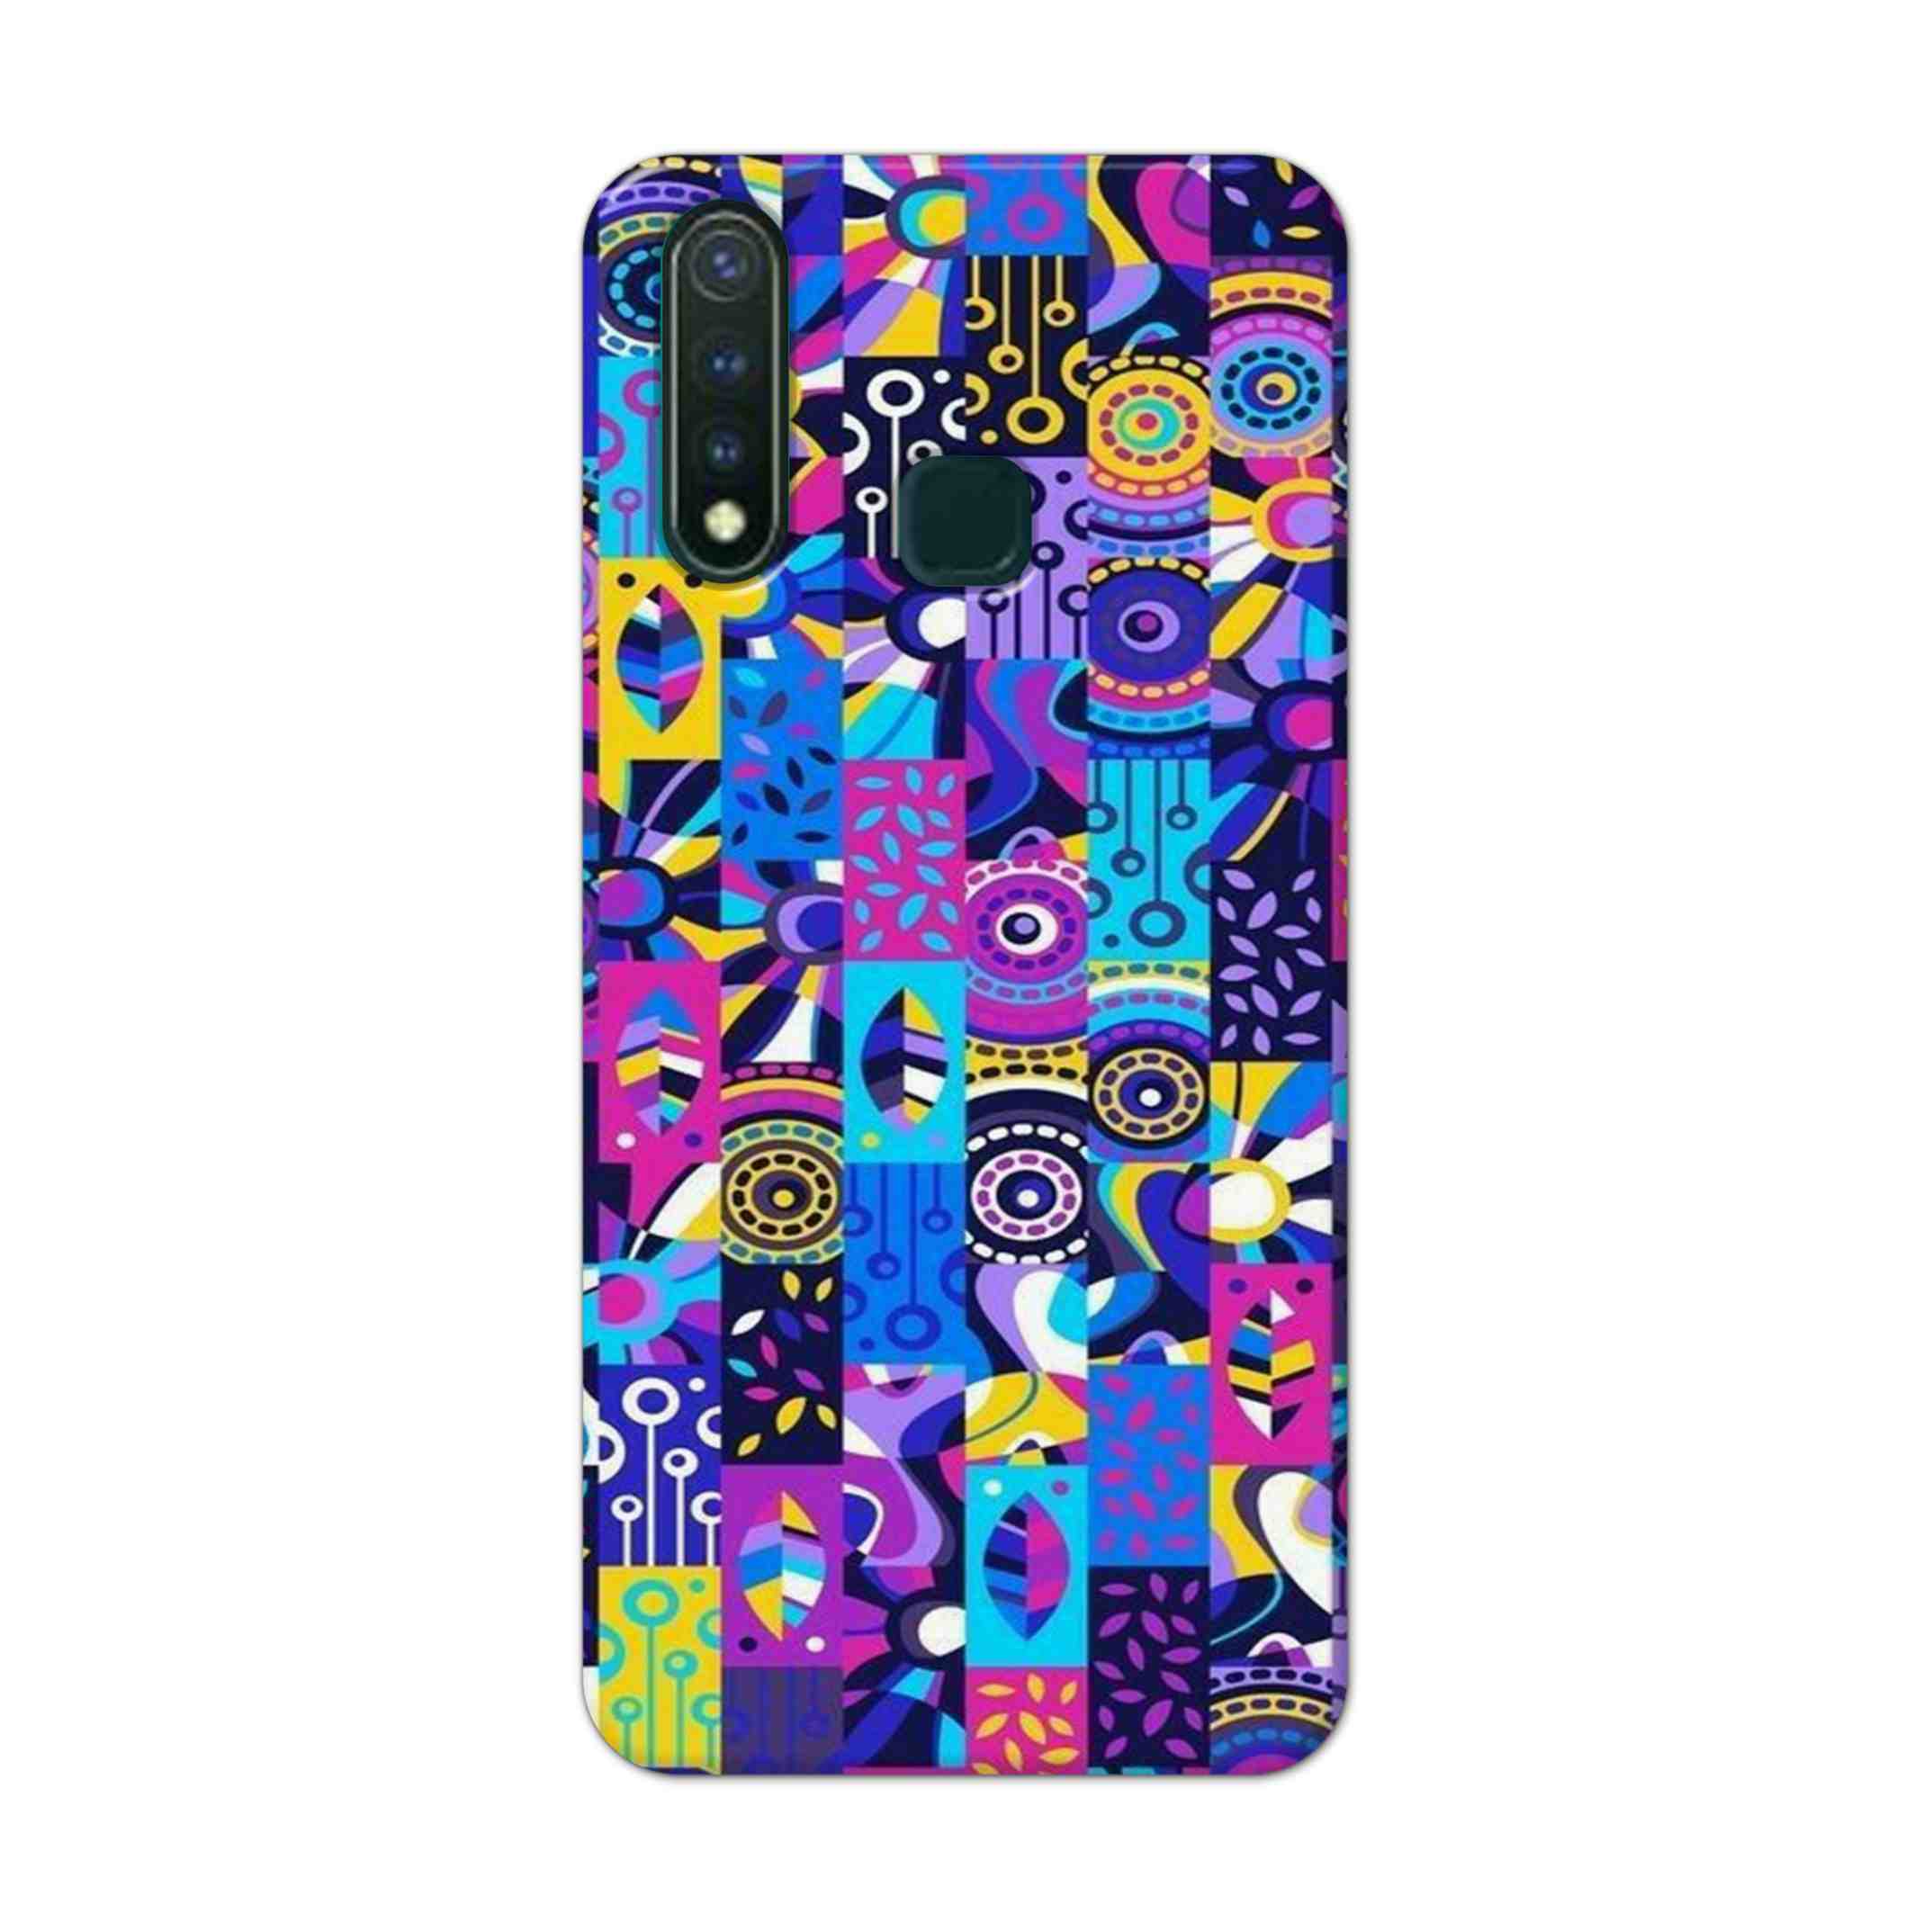 Buy Rainbow Art Hard Back Mobile Phone Case Cover For Vivo U20 Online